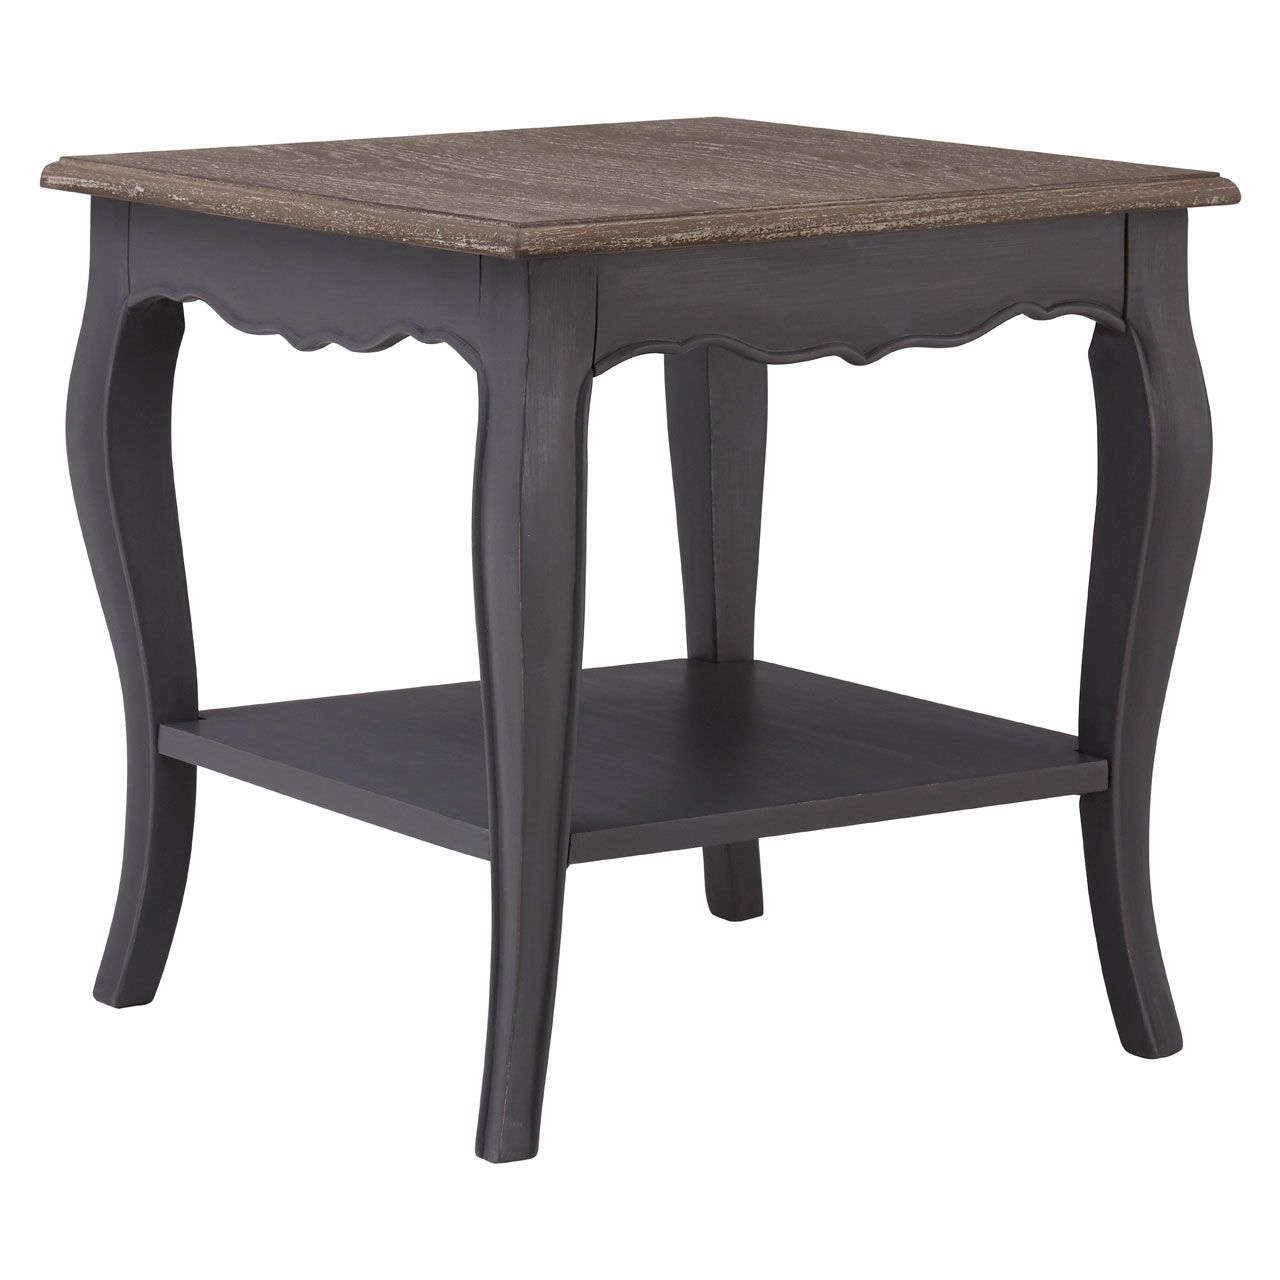 Loire Wooden Side Table In Dark Grey With 1 Shelf